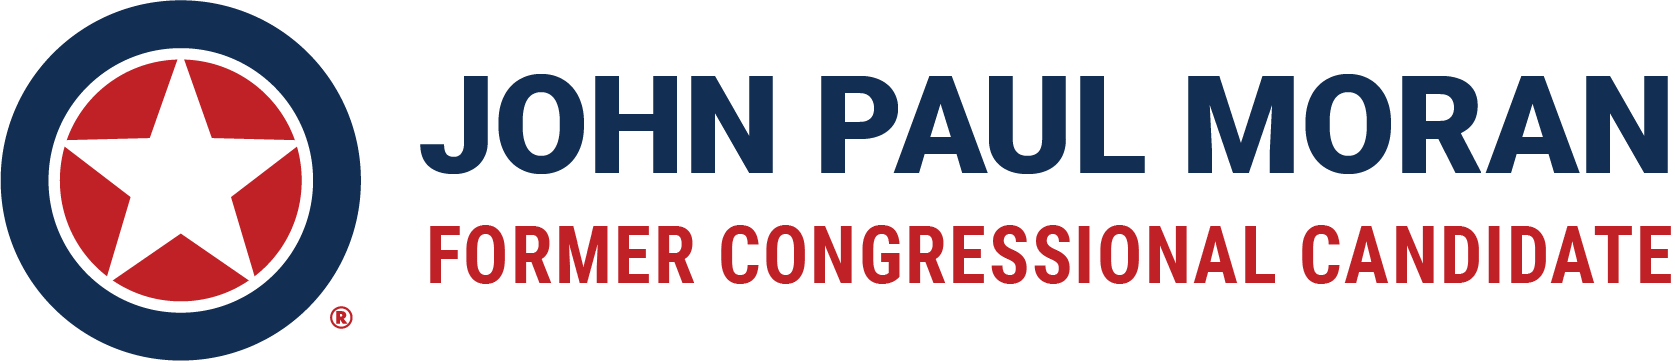 John Paul Moran for U.S. Congress®